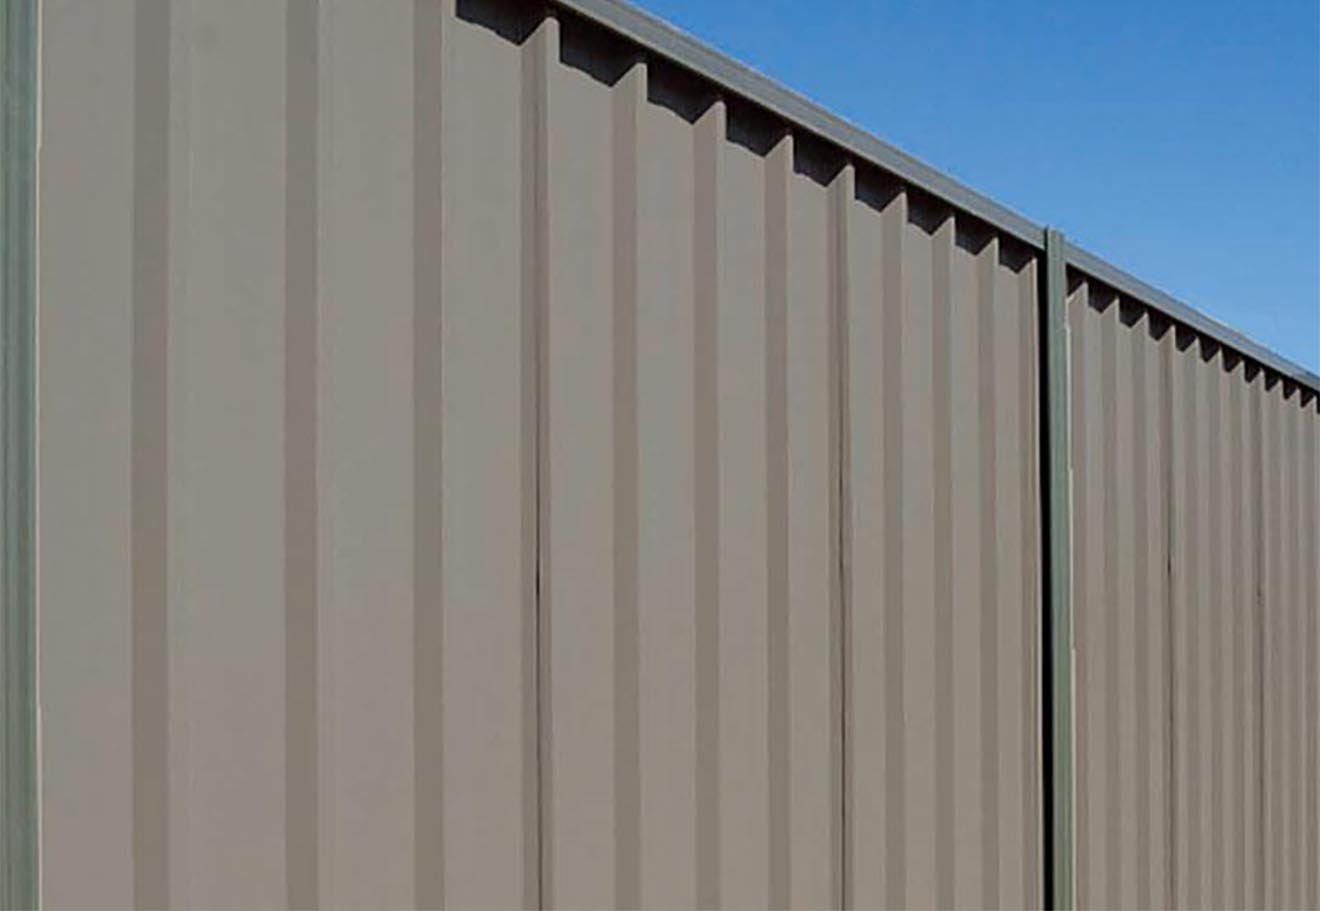 Trimclad COLORBOND® BlueScope Steel fence